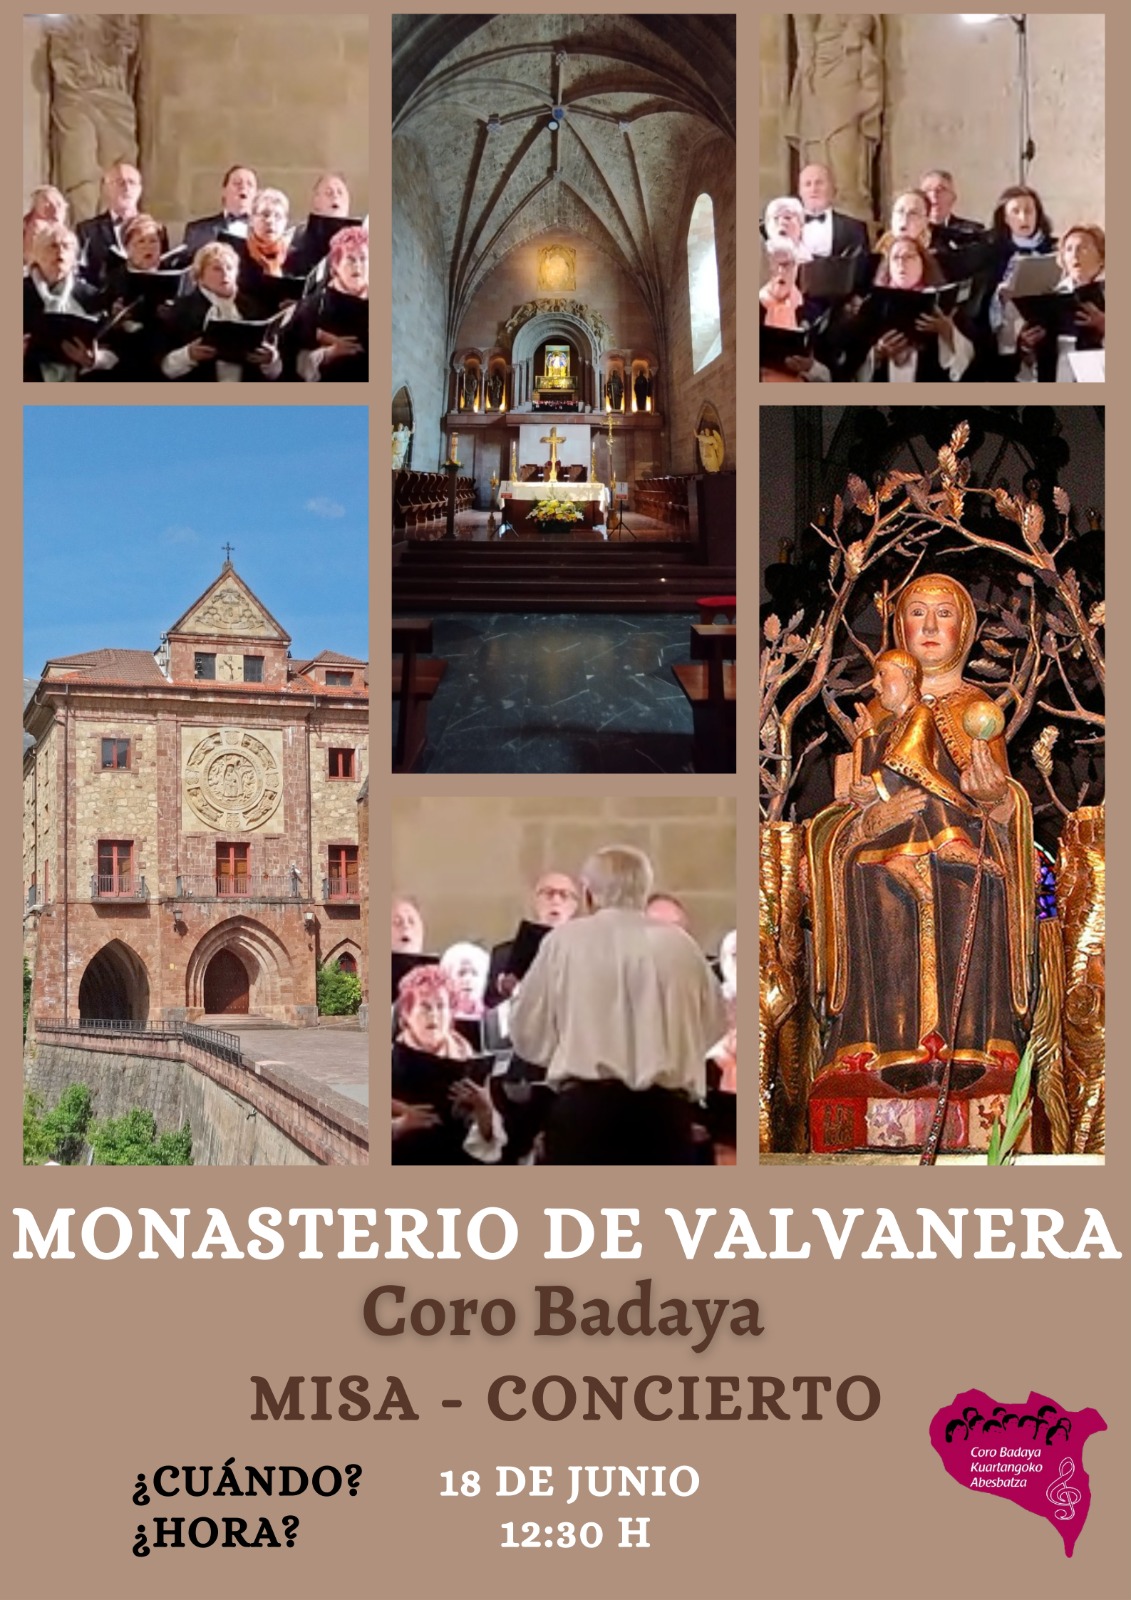 Misa-Concierto Coro Badaya en el Monasterio de Valvanera (Anguiano, La Rioja) el 18 de Junio